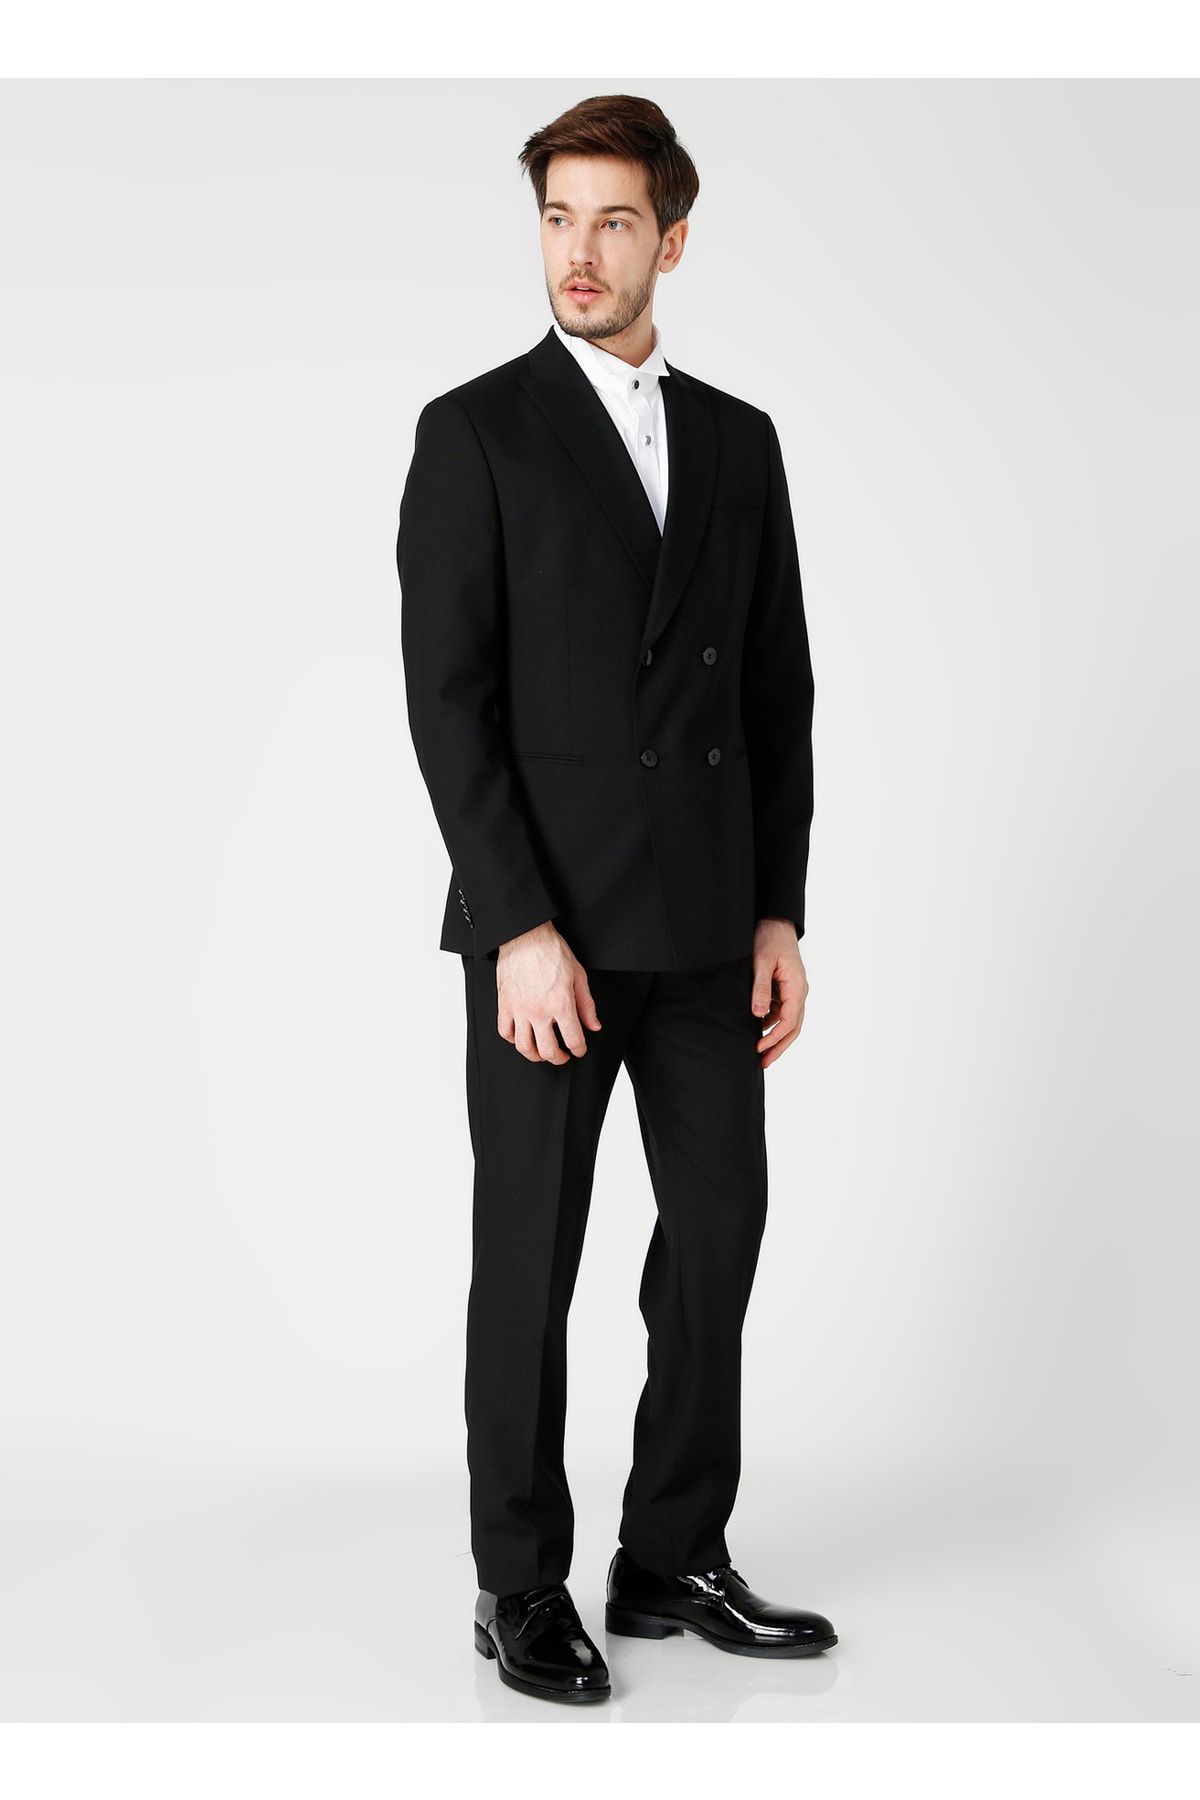 Fabrika Ceket Yaka Normal Bel Slim Fit Düz Siyah Erkek Takım Elbise - Sımon-kımya18/778